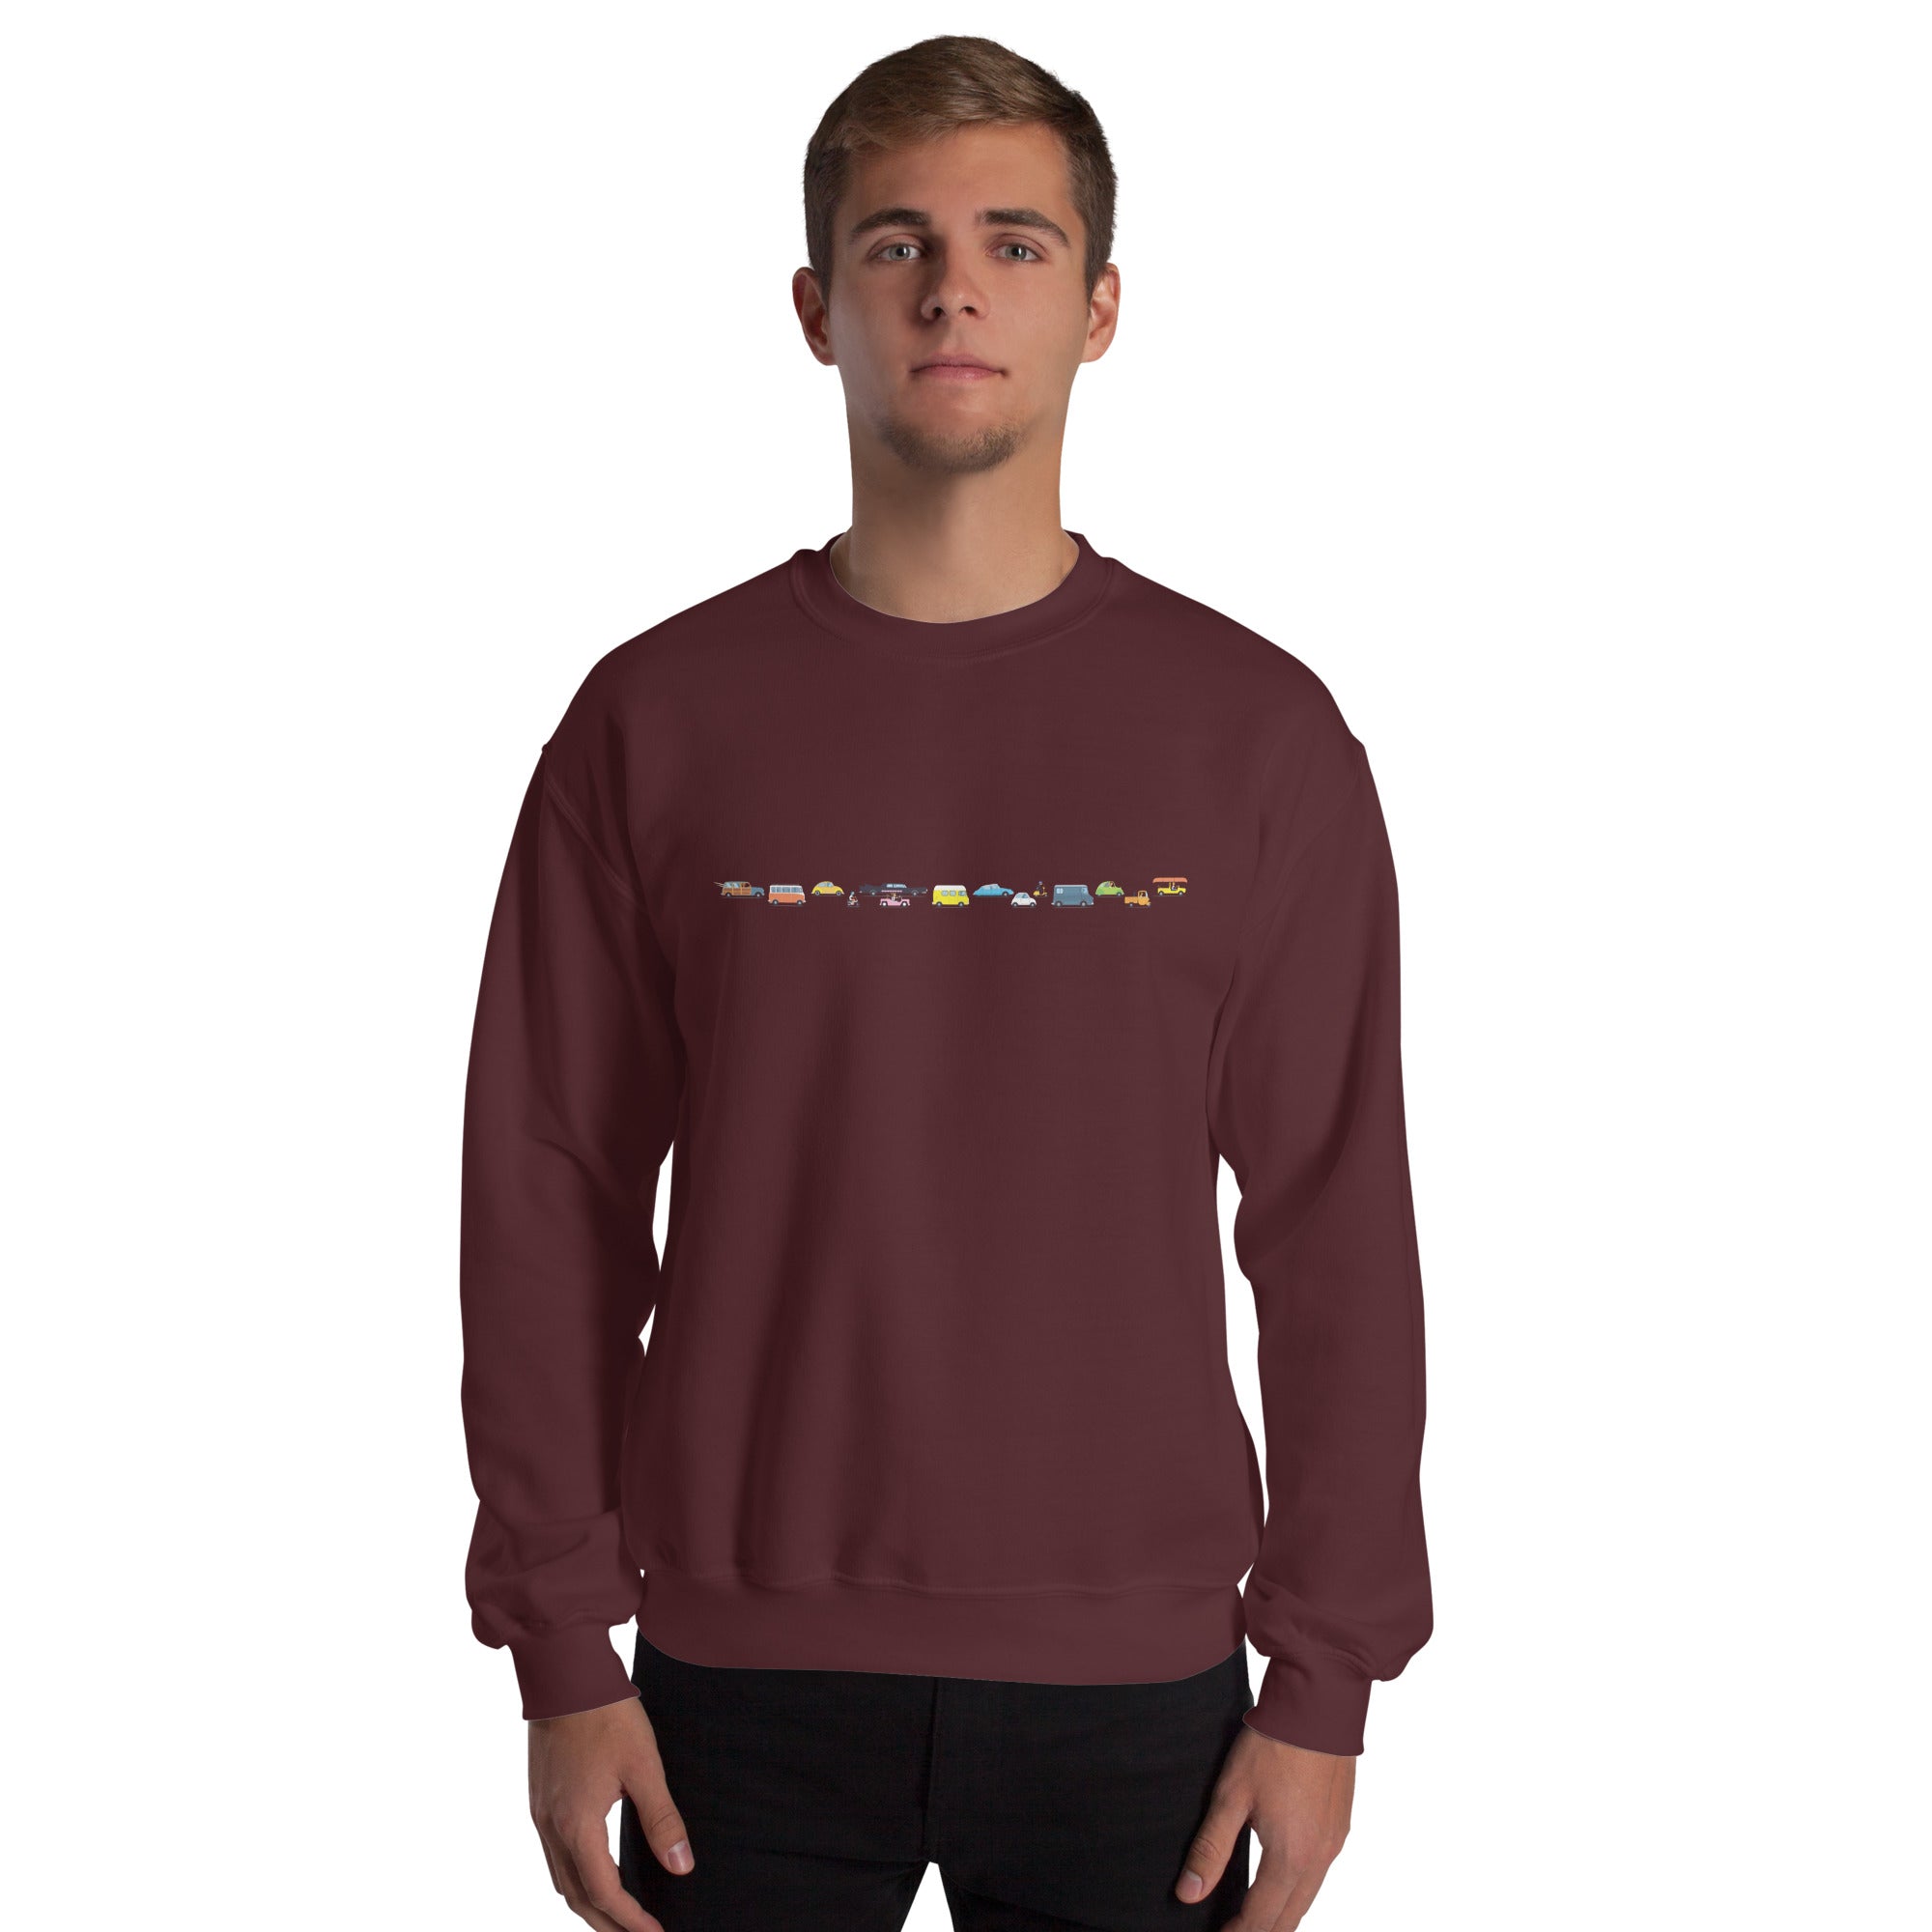 Unisex Sweatshirt Vintage Cars Traffic Jam on dark colors